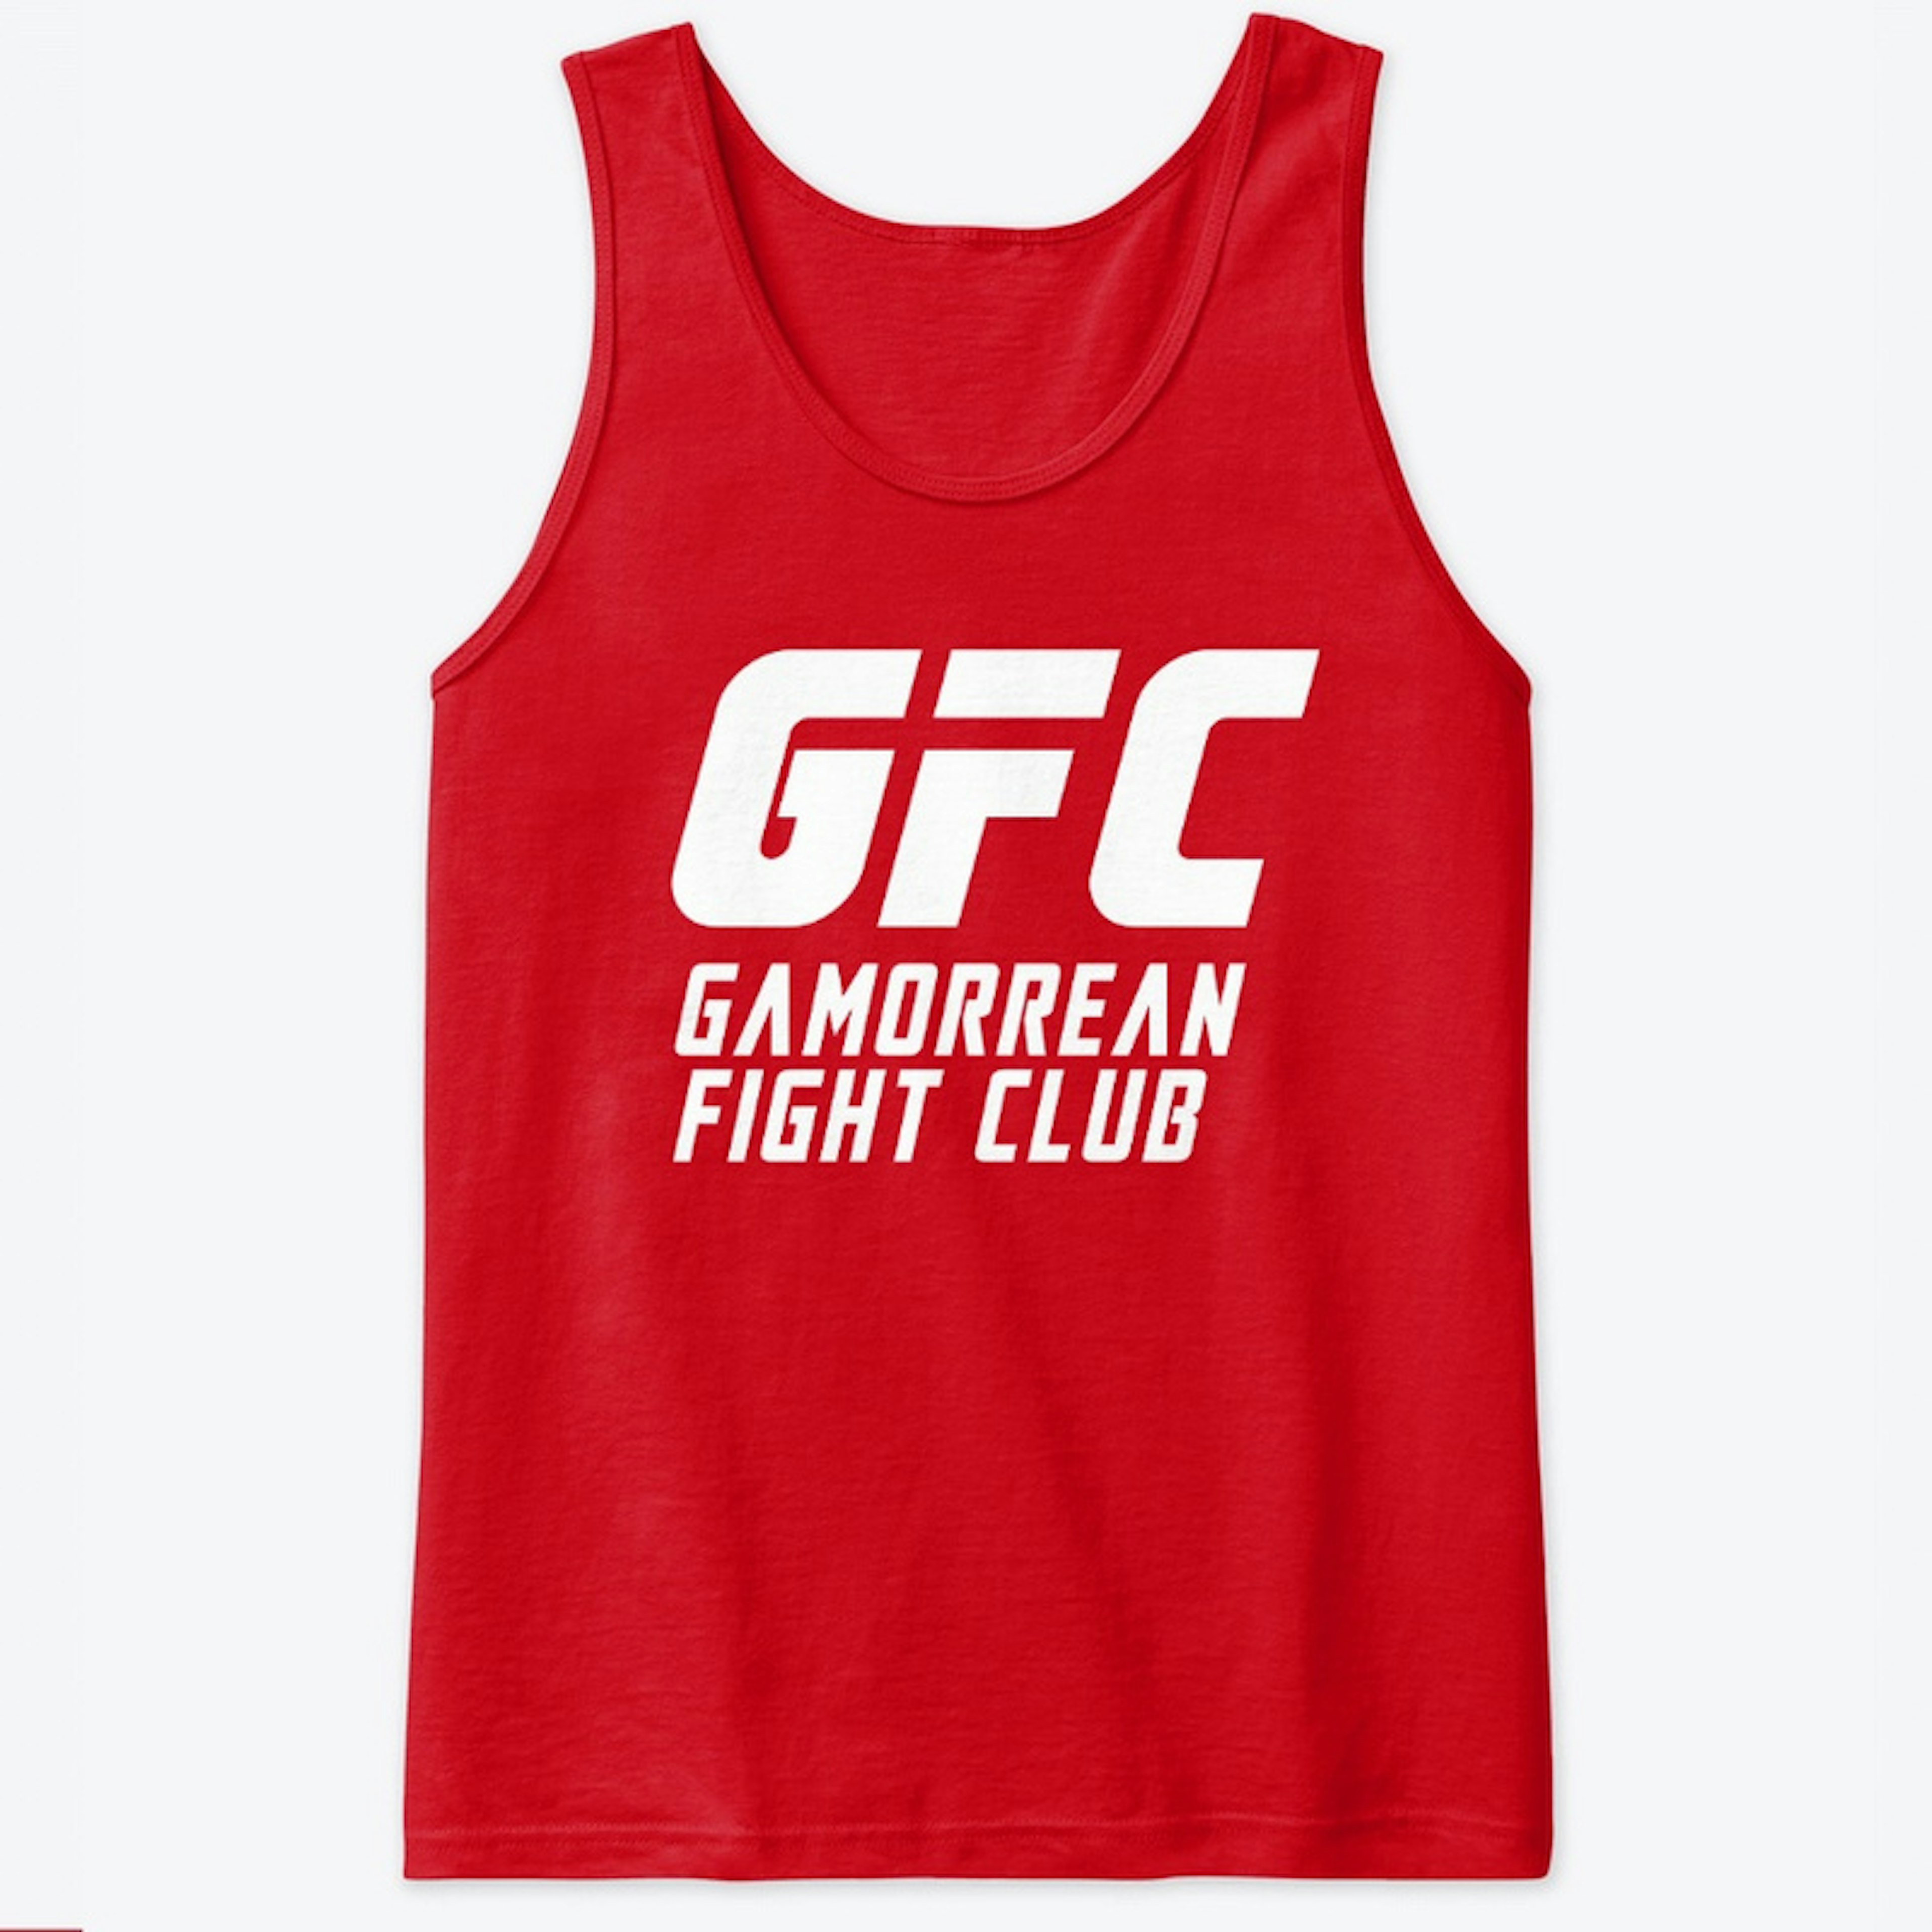 Gamorrean Fight Club